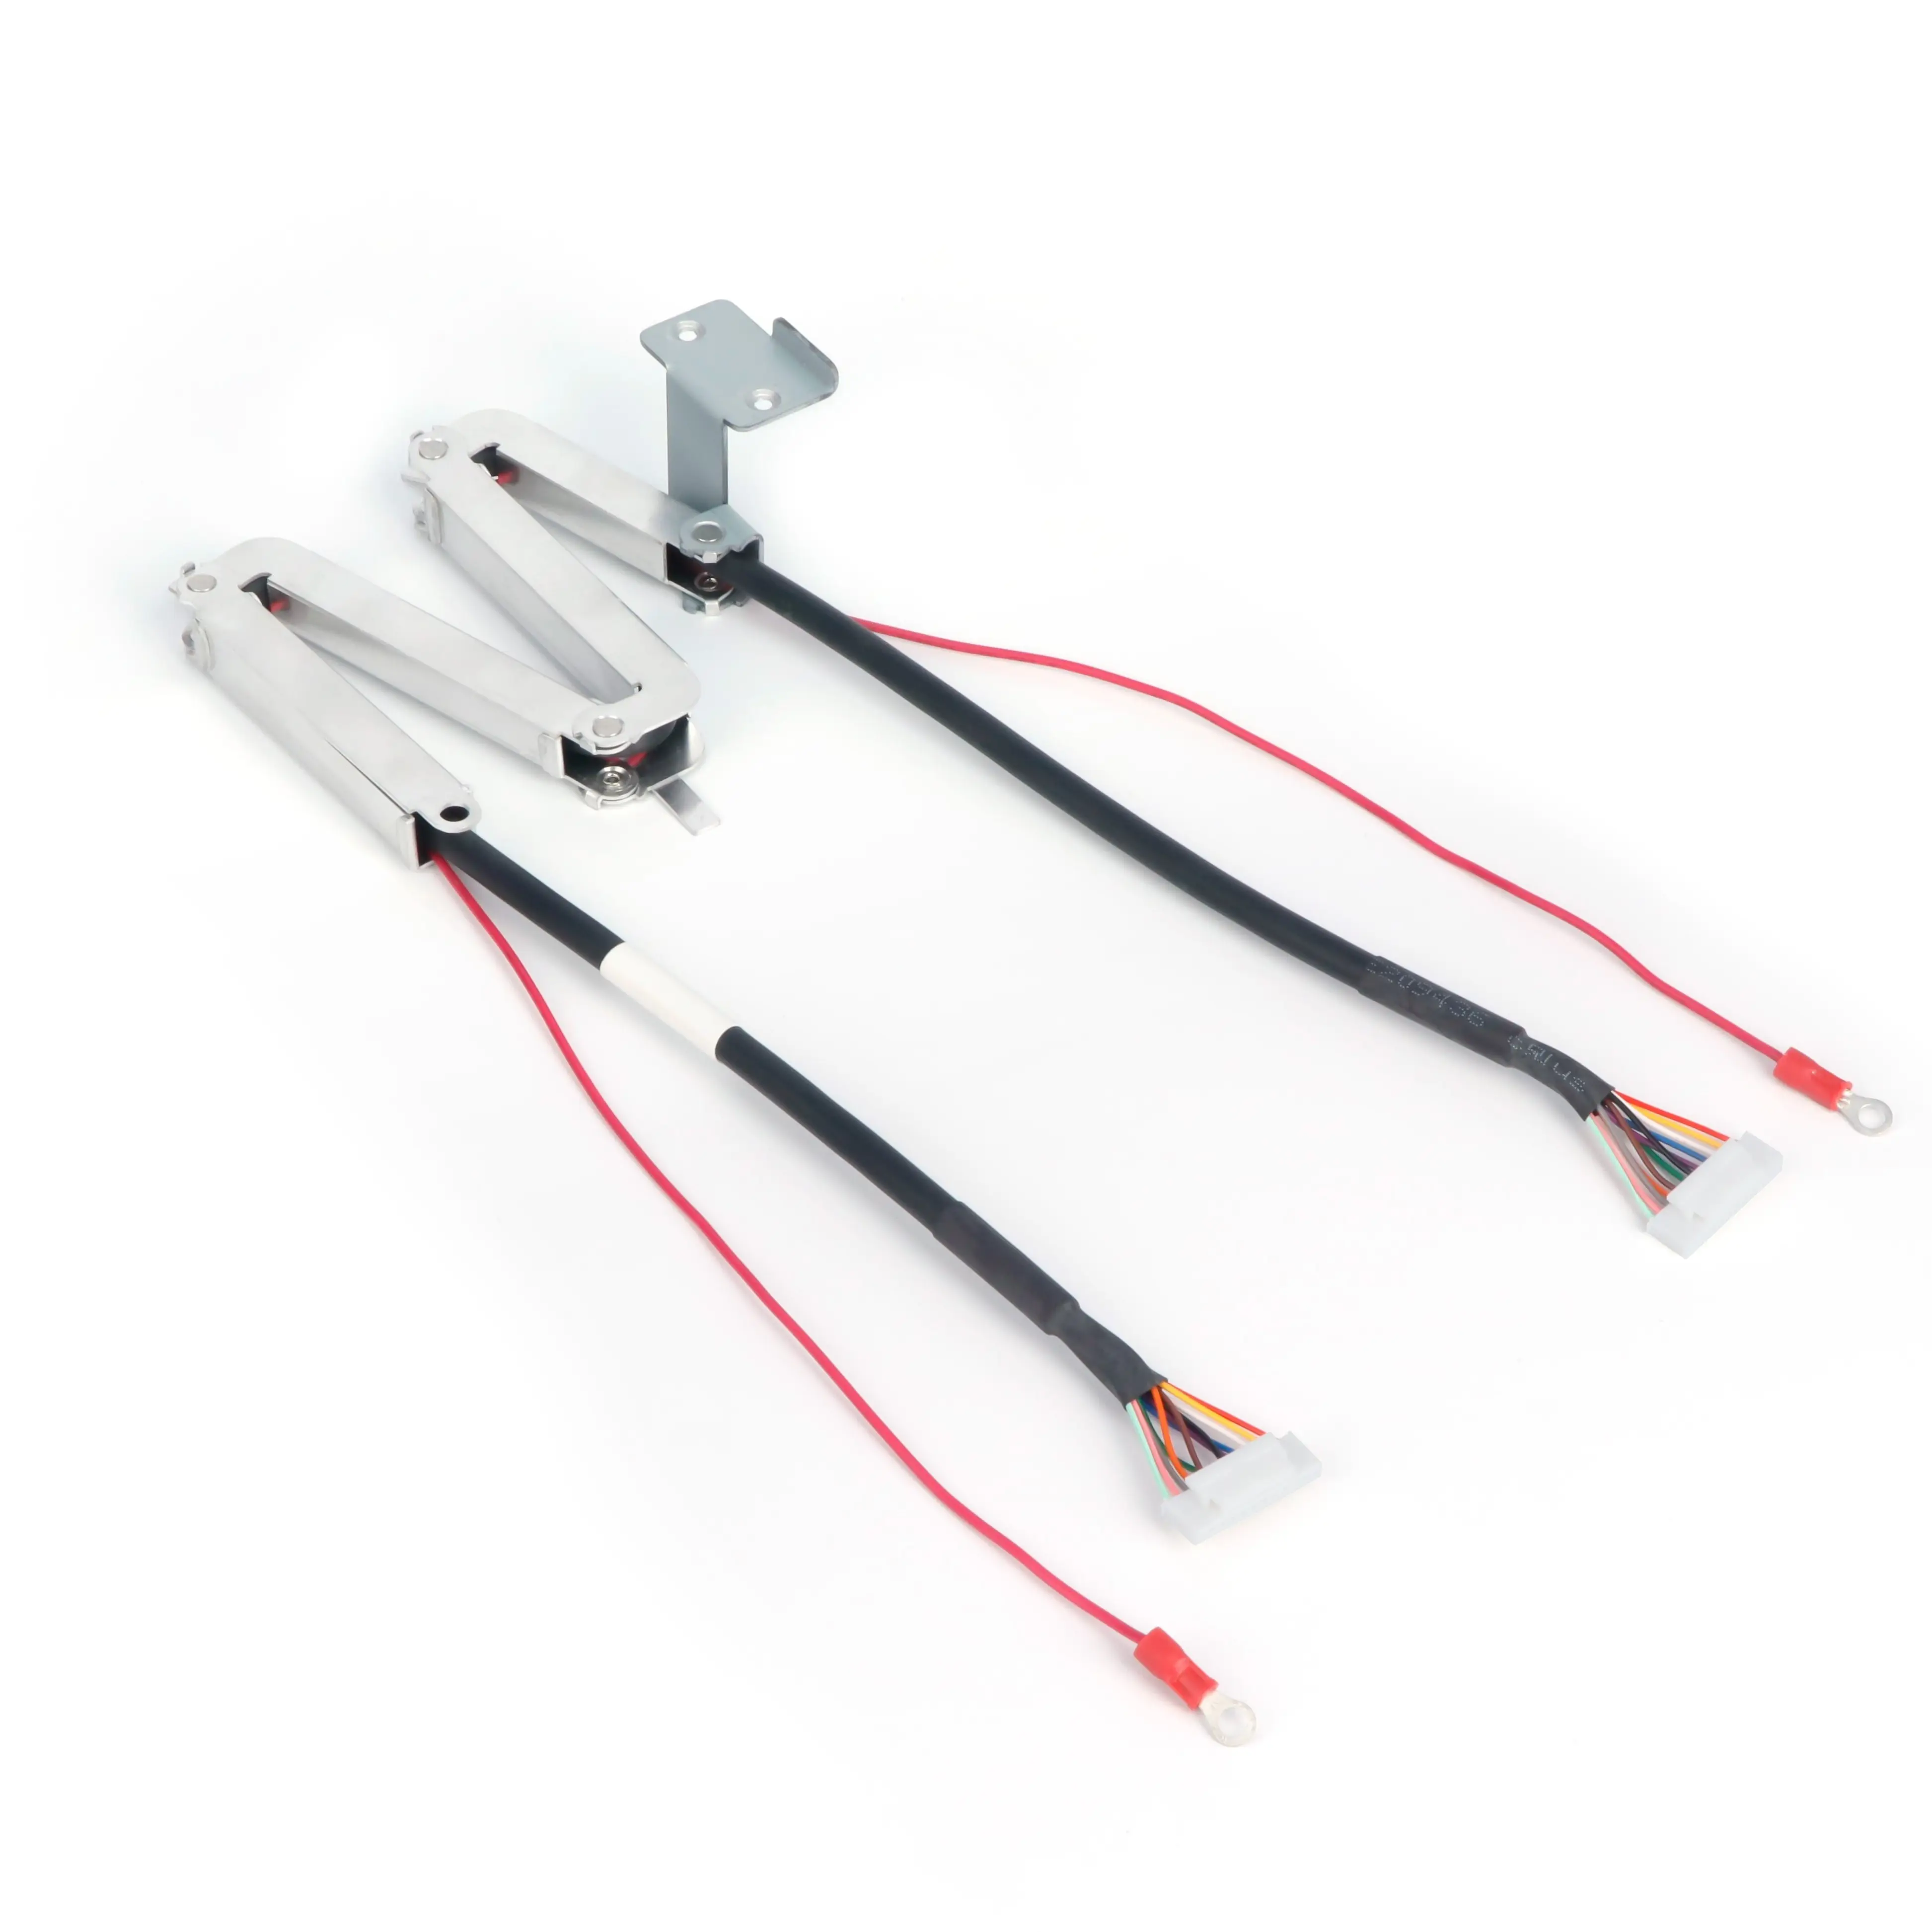 Kabel kontrol bagian dalam perangkat kustom kabel penghubung HY untuk peralatan medis